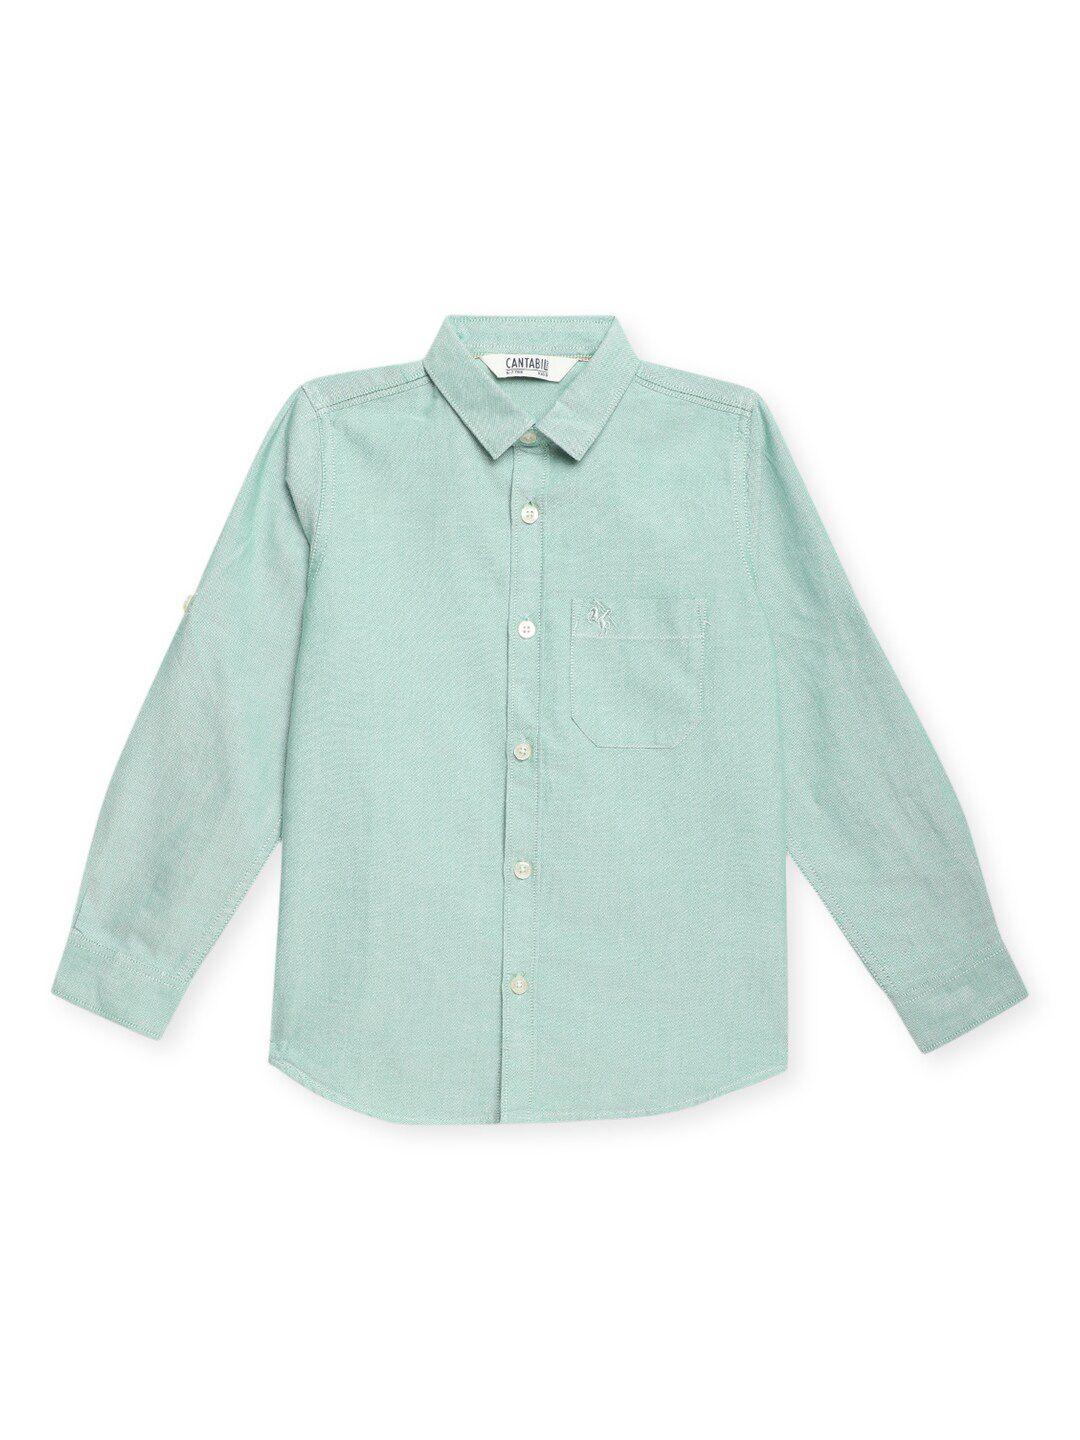 cantabil-boys-spread-collar-cotton-casual-shirt